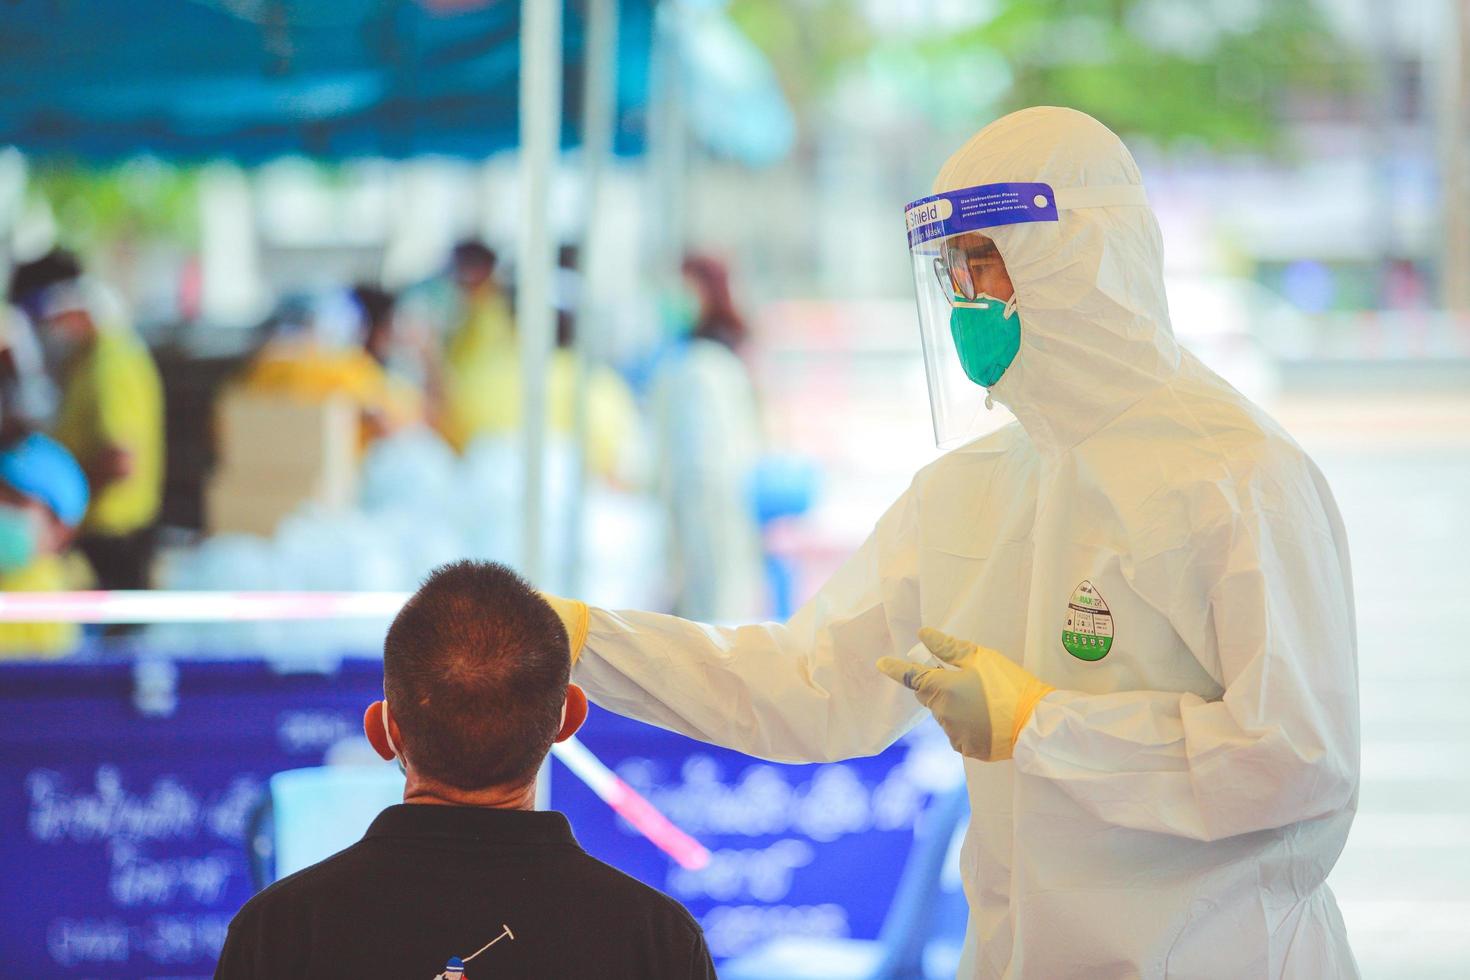 nakhon ratchasima, thaïlande - 24 avril 2021 agents techniques de santé publique collectant des sécrétions personnes pour un dépistage proactif covid19. photo